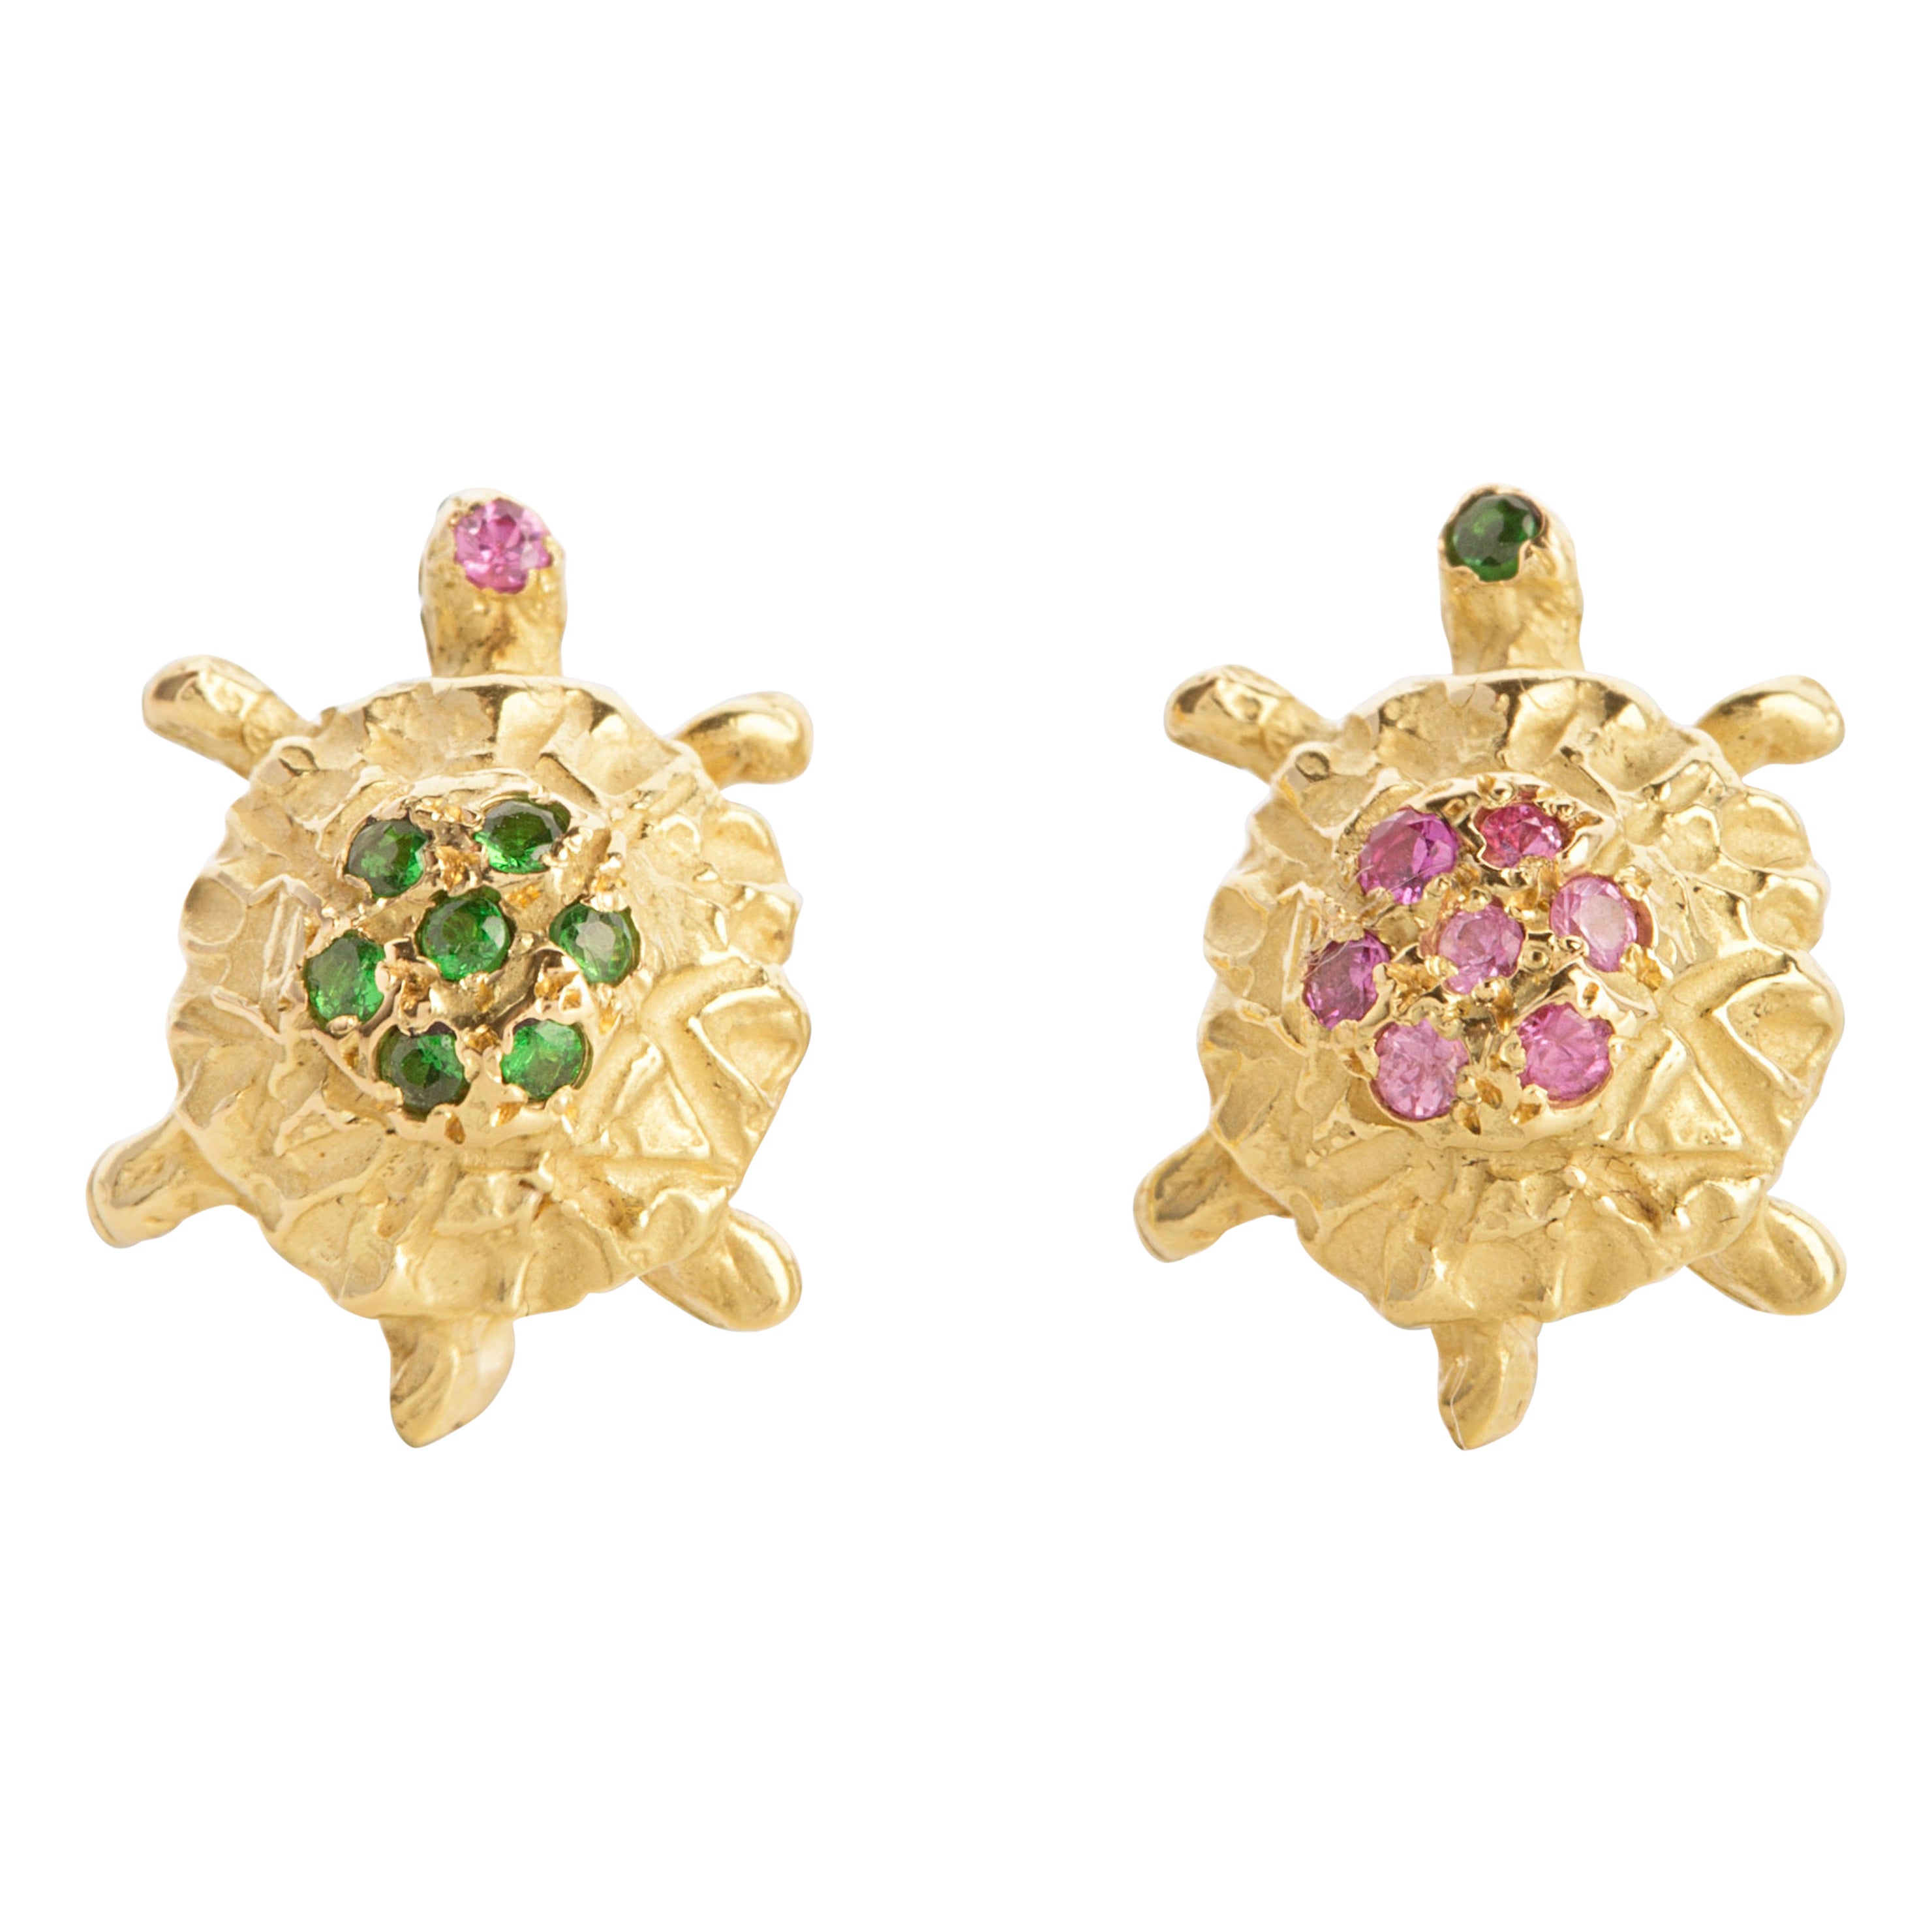 Clous d'oreilles martelés en or 18 carats avec tortue, tsavorite verte et tourmaline rose